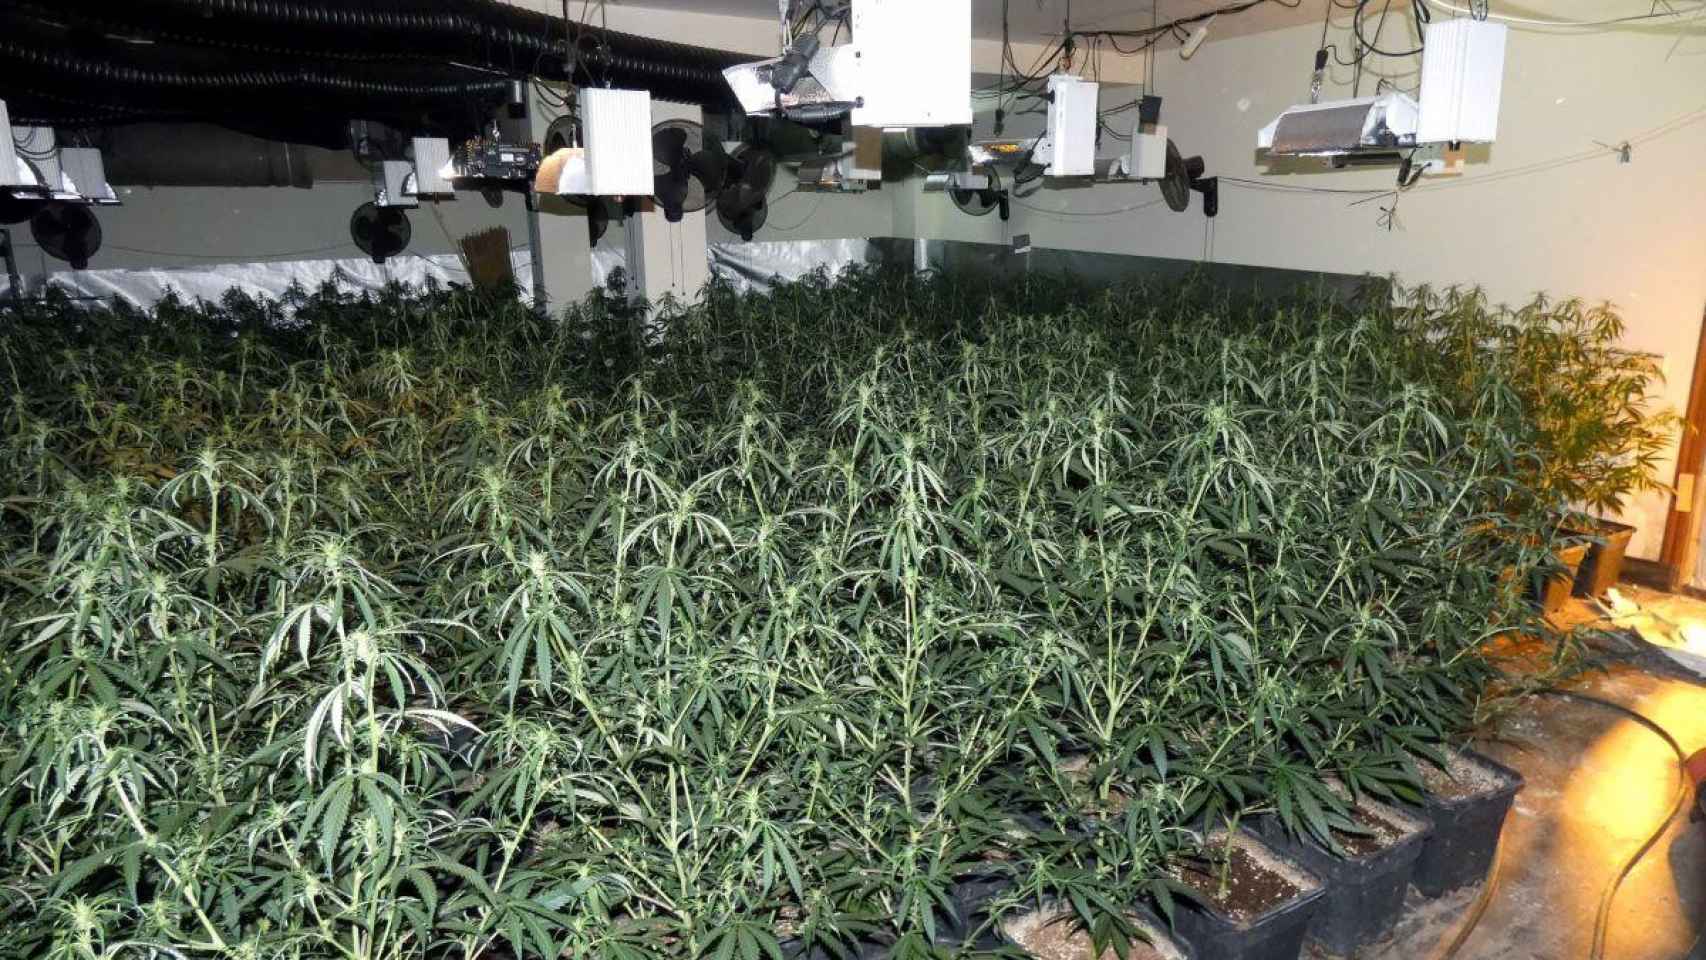 Imagen de la plantación de marihuana descubierta en una casa de Reus / GUARDIA URBANA DE REUS